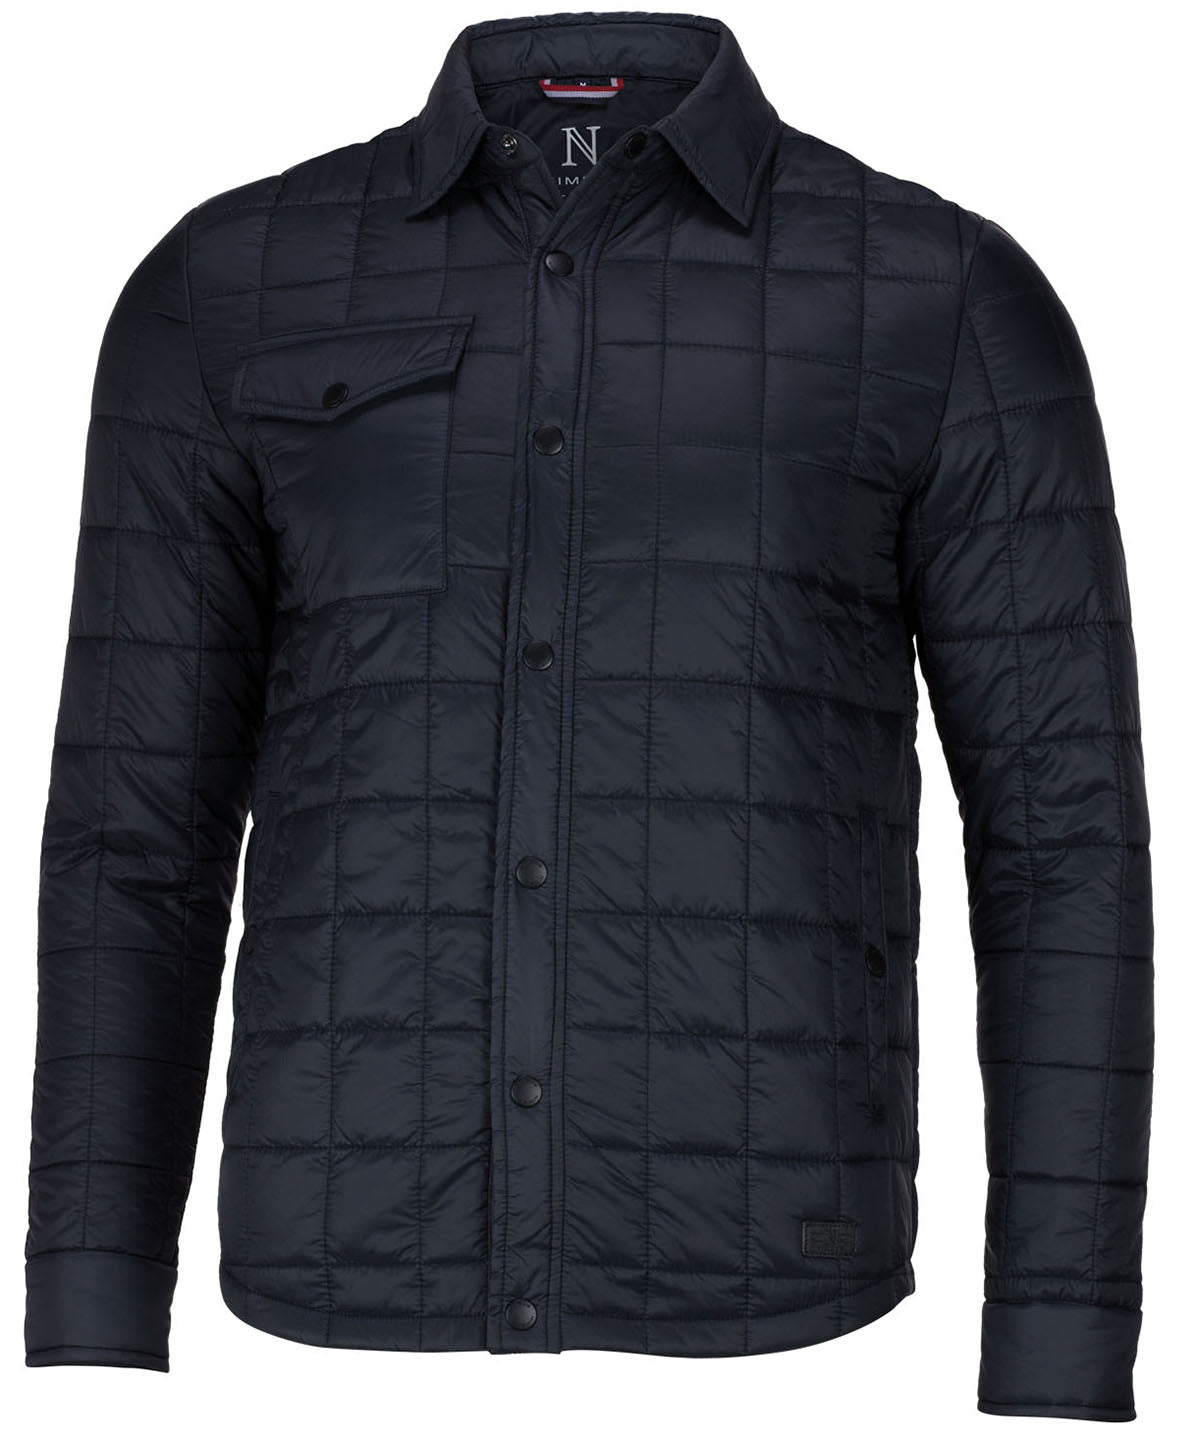 Jakkar - Brookhaven – Fashionable Crossover Jacket